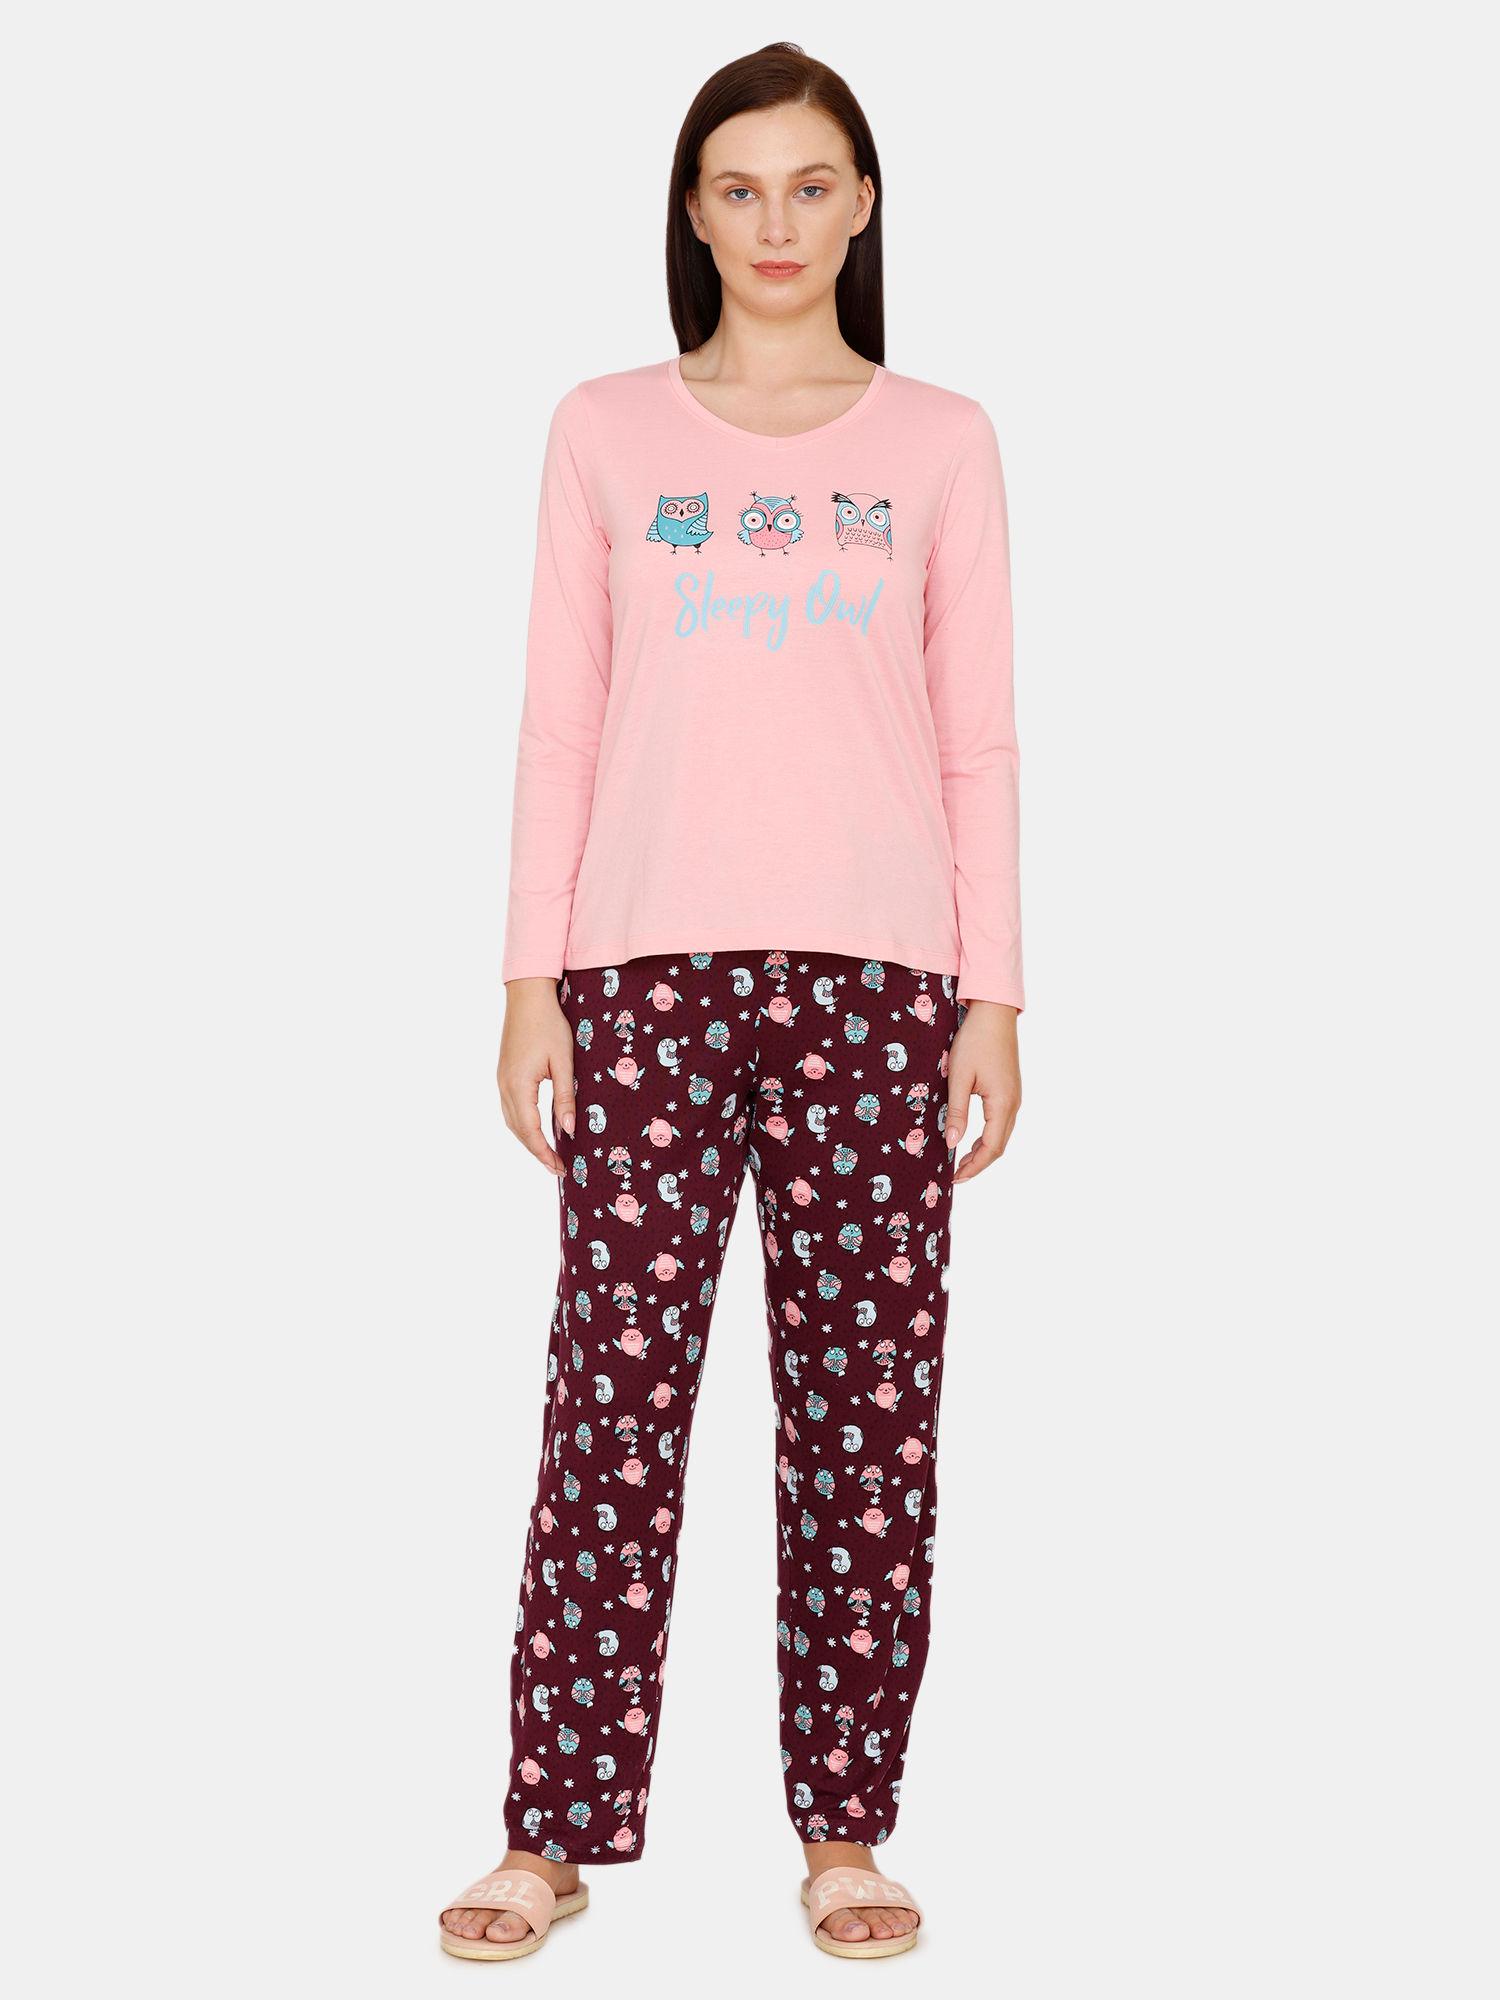 sleepy-owl-butter-soft-poly-knit-pyjama-set---pink